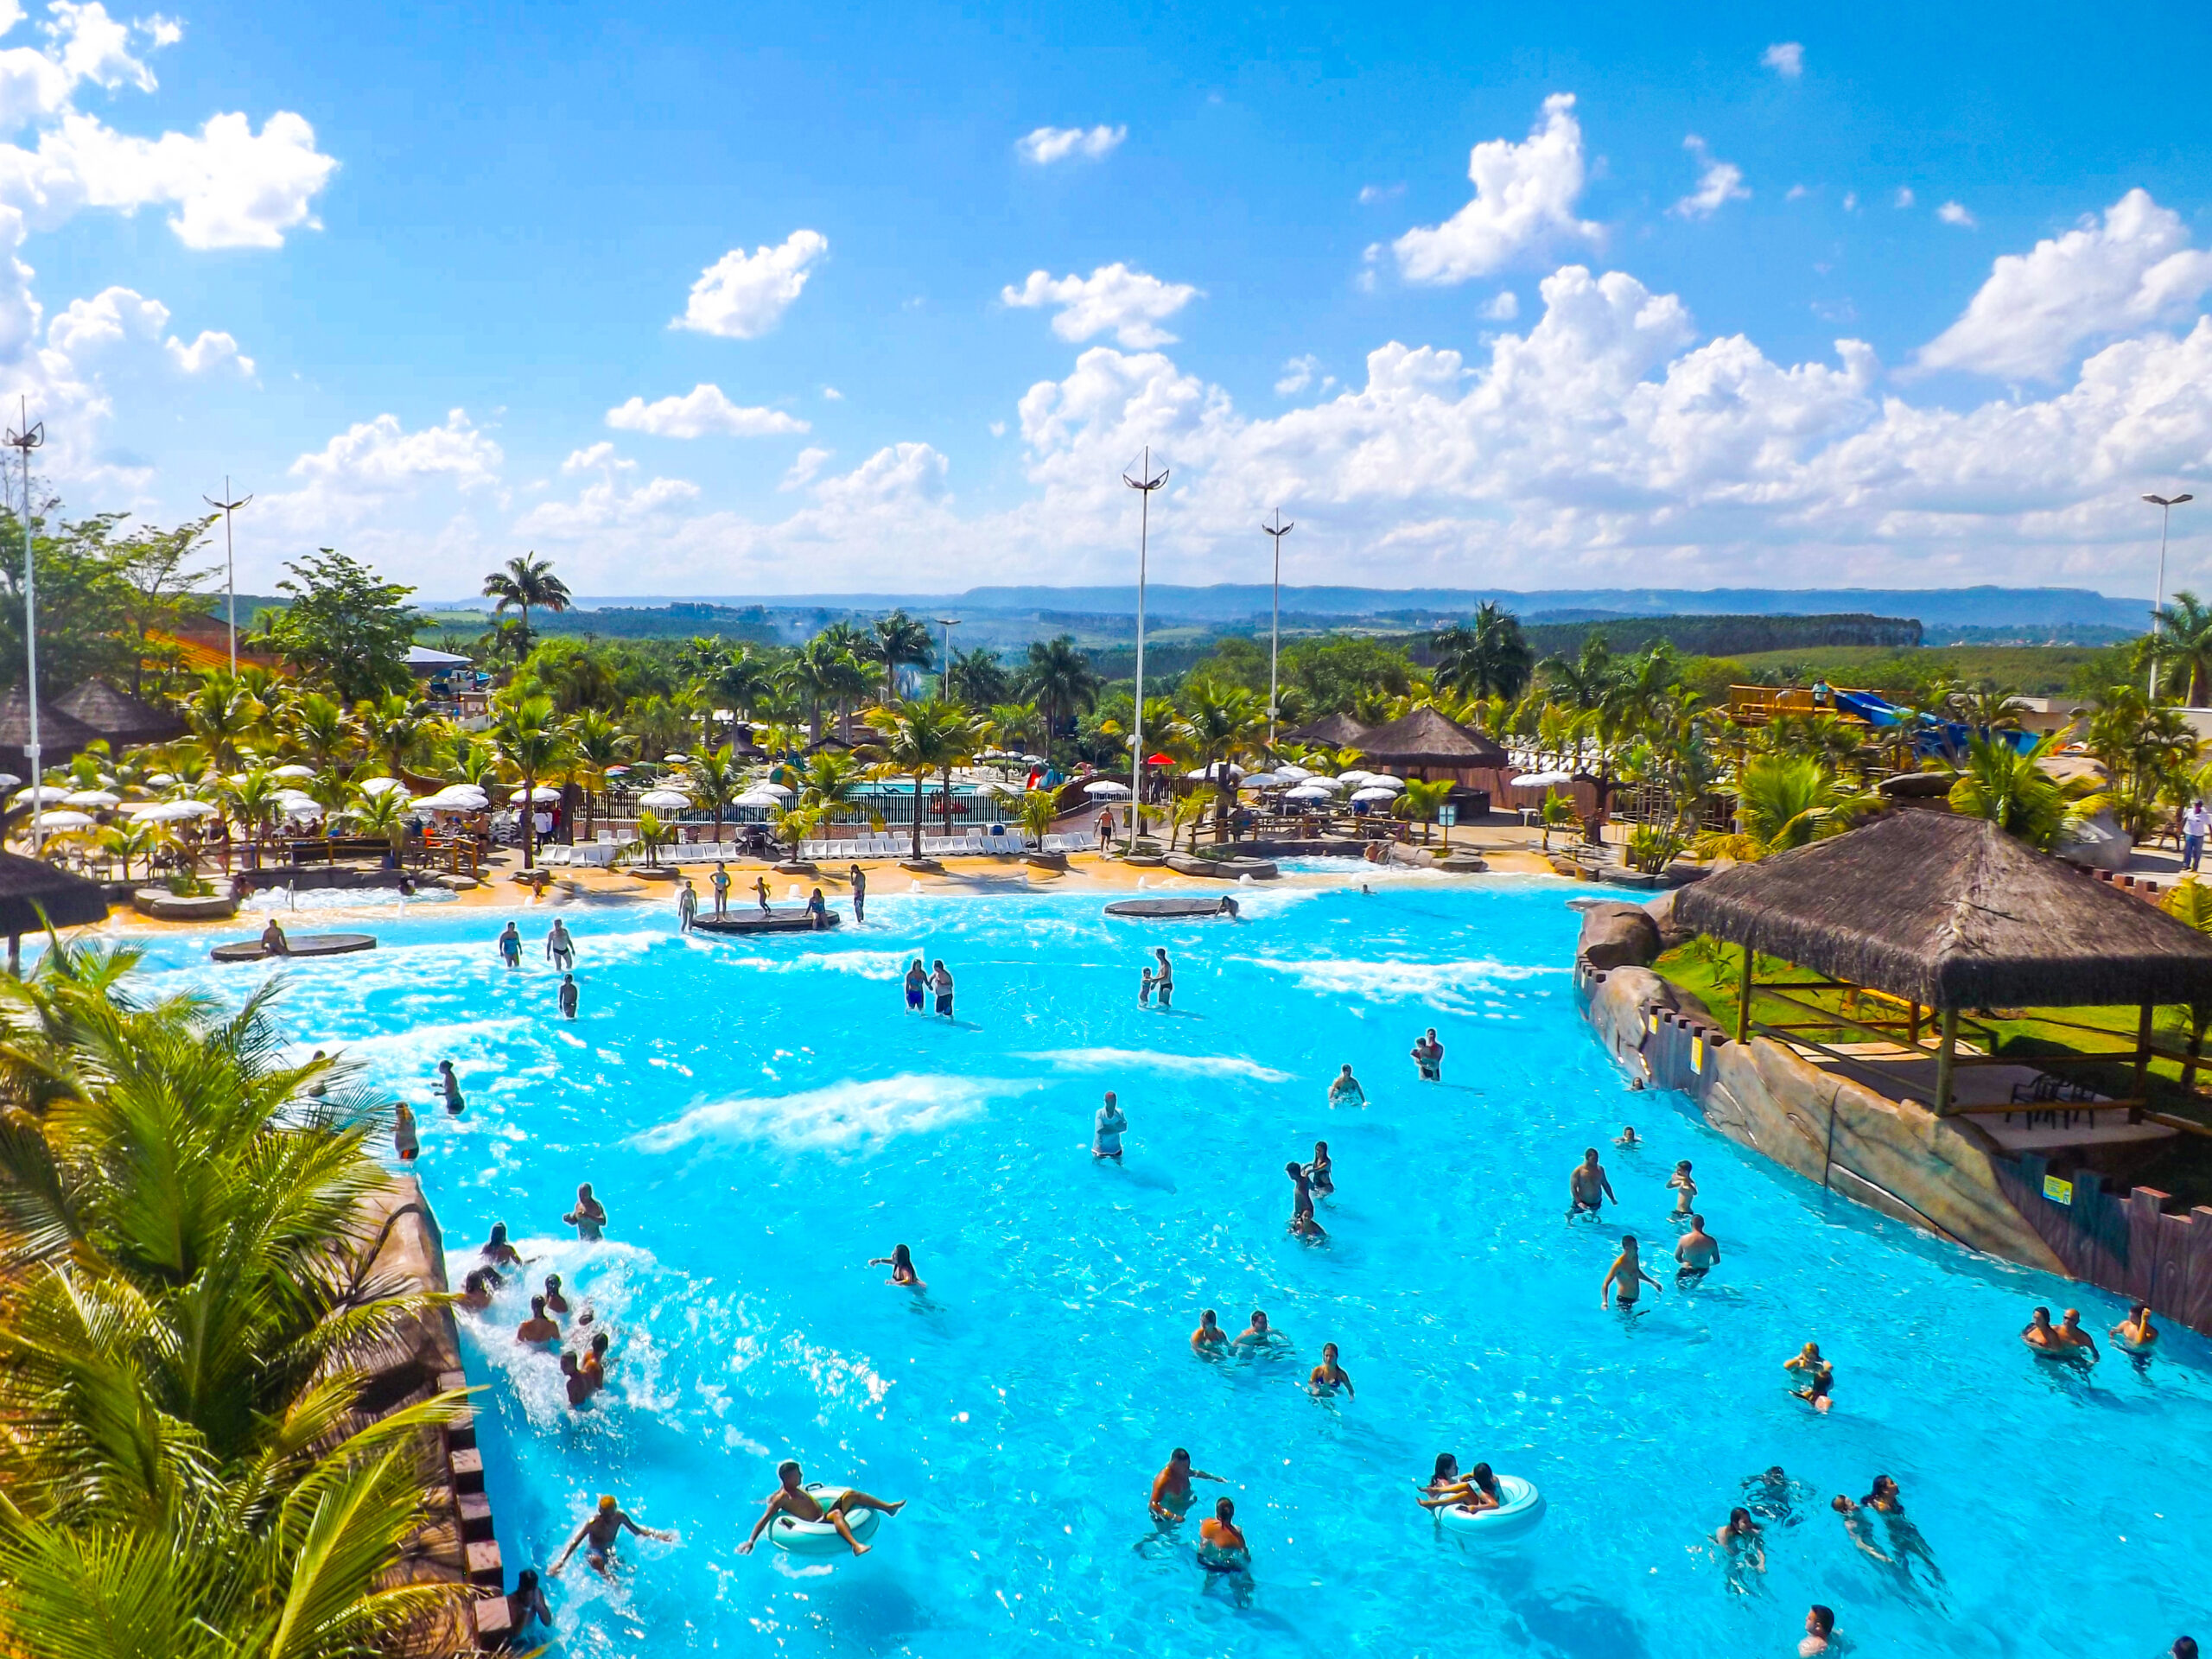 A piscina de ondas do parque aquático Thermas Water Park, a maior do estado de SP